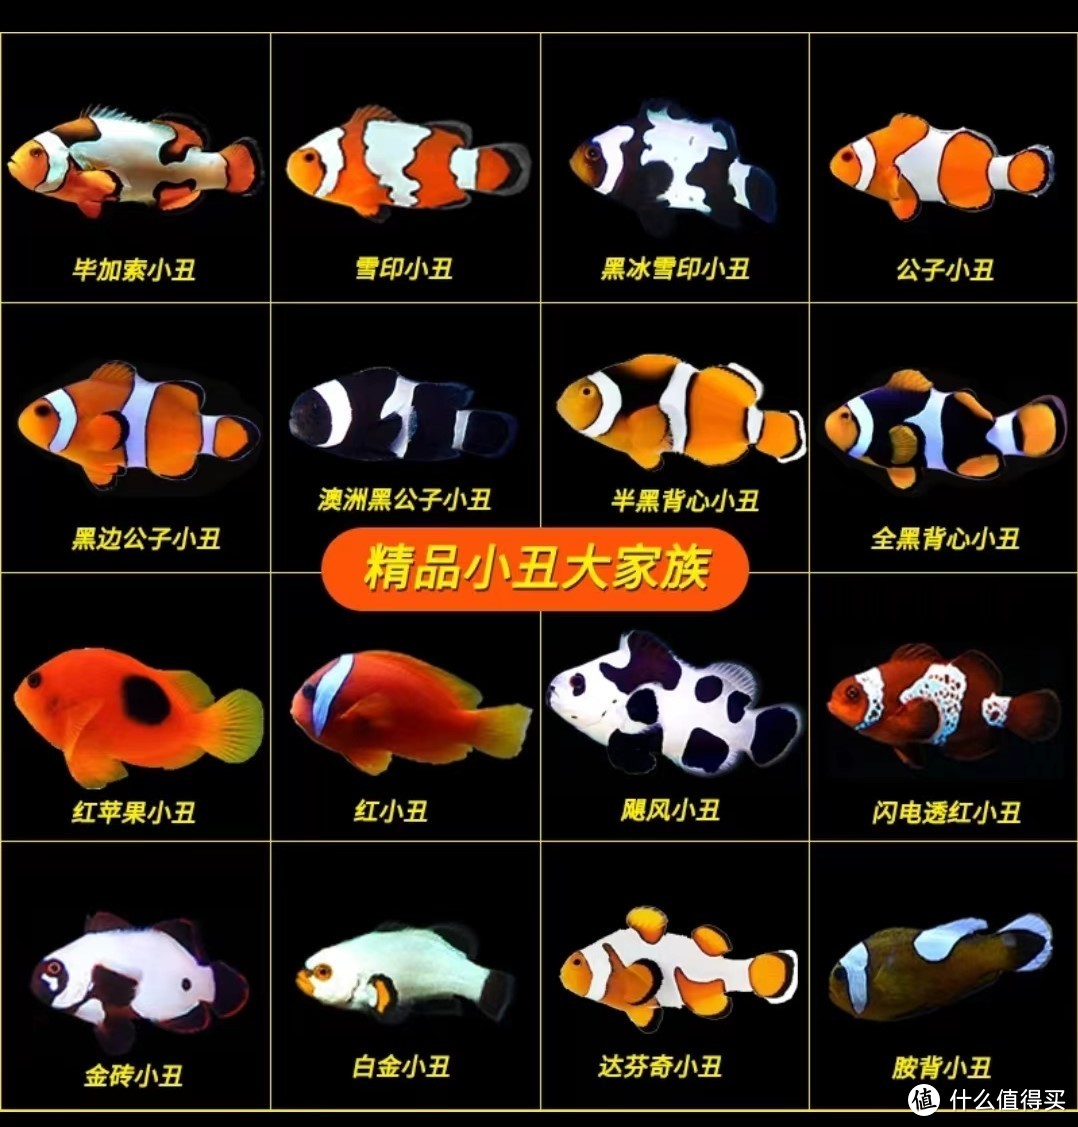 小丑鱼大家庭，品种不同最终个体大小也有差异